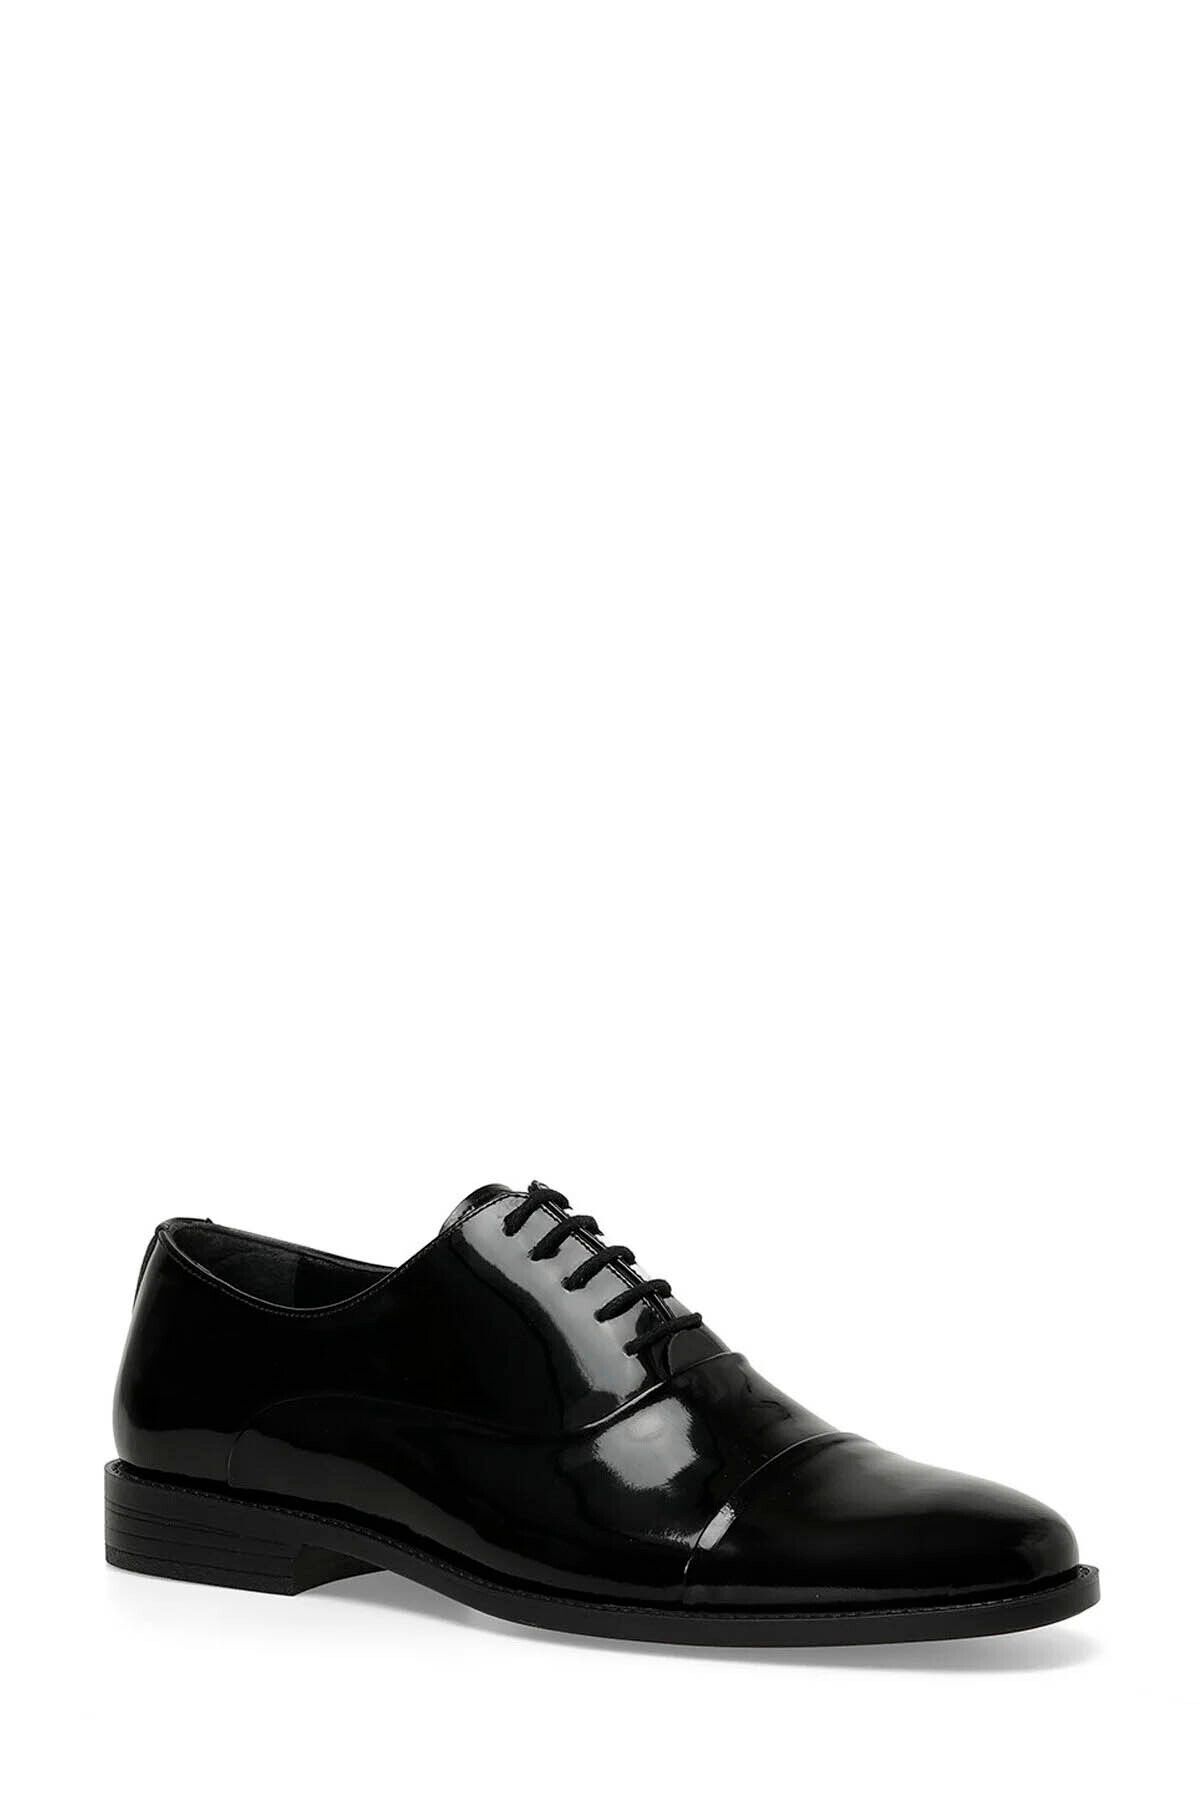 İnci Erkek Klasik Ayakkabı Siyah 101544670 Max R 4fx Incı